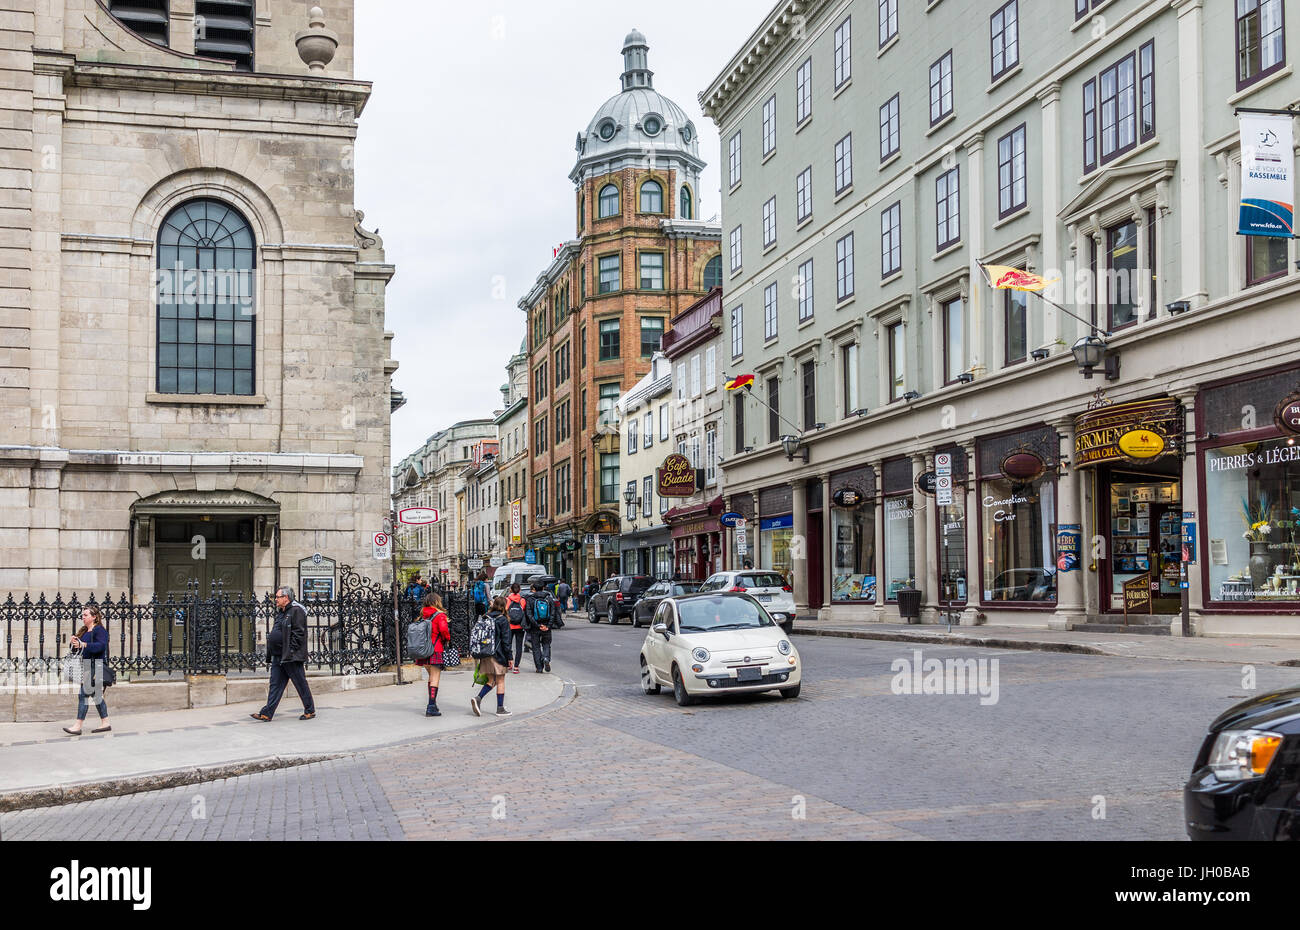 La ville de Québec, Canada - 29 mai 2017 : rue de la vieille ville avec ses boutiques et magasins avec mur de pierre des bâtiments de brique Banque D'Images